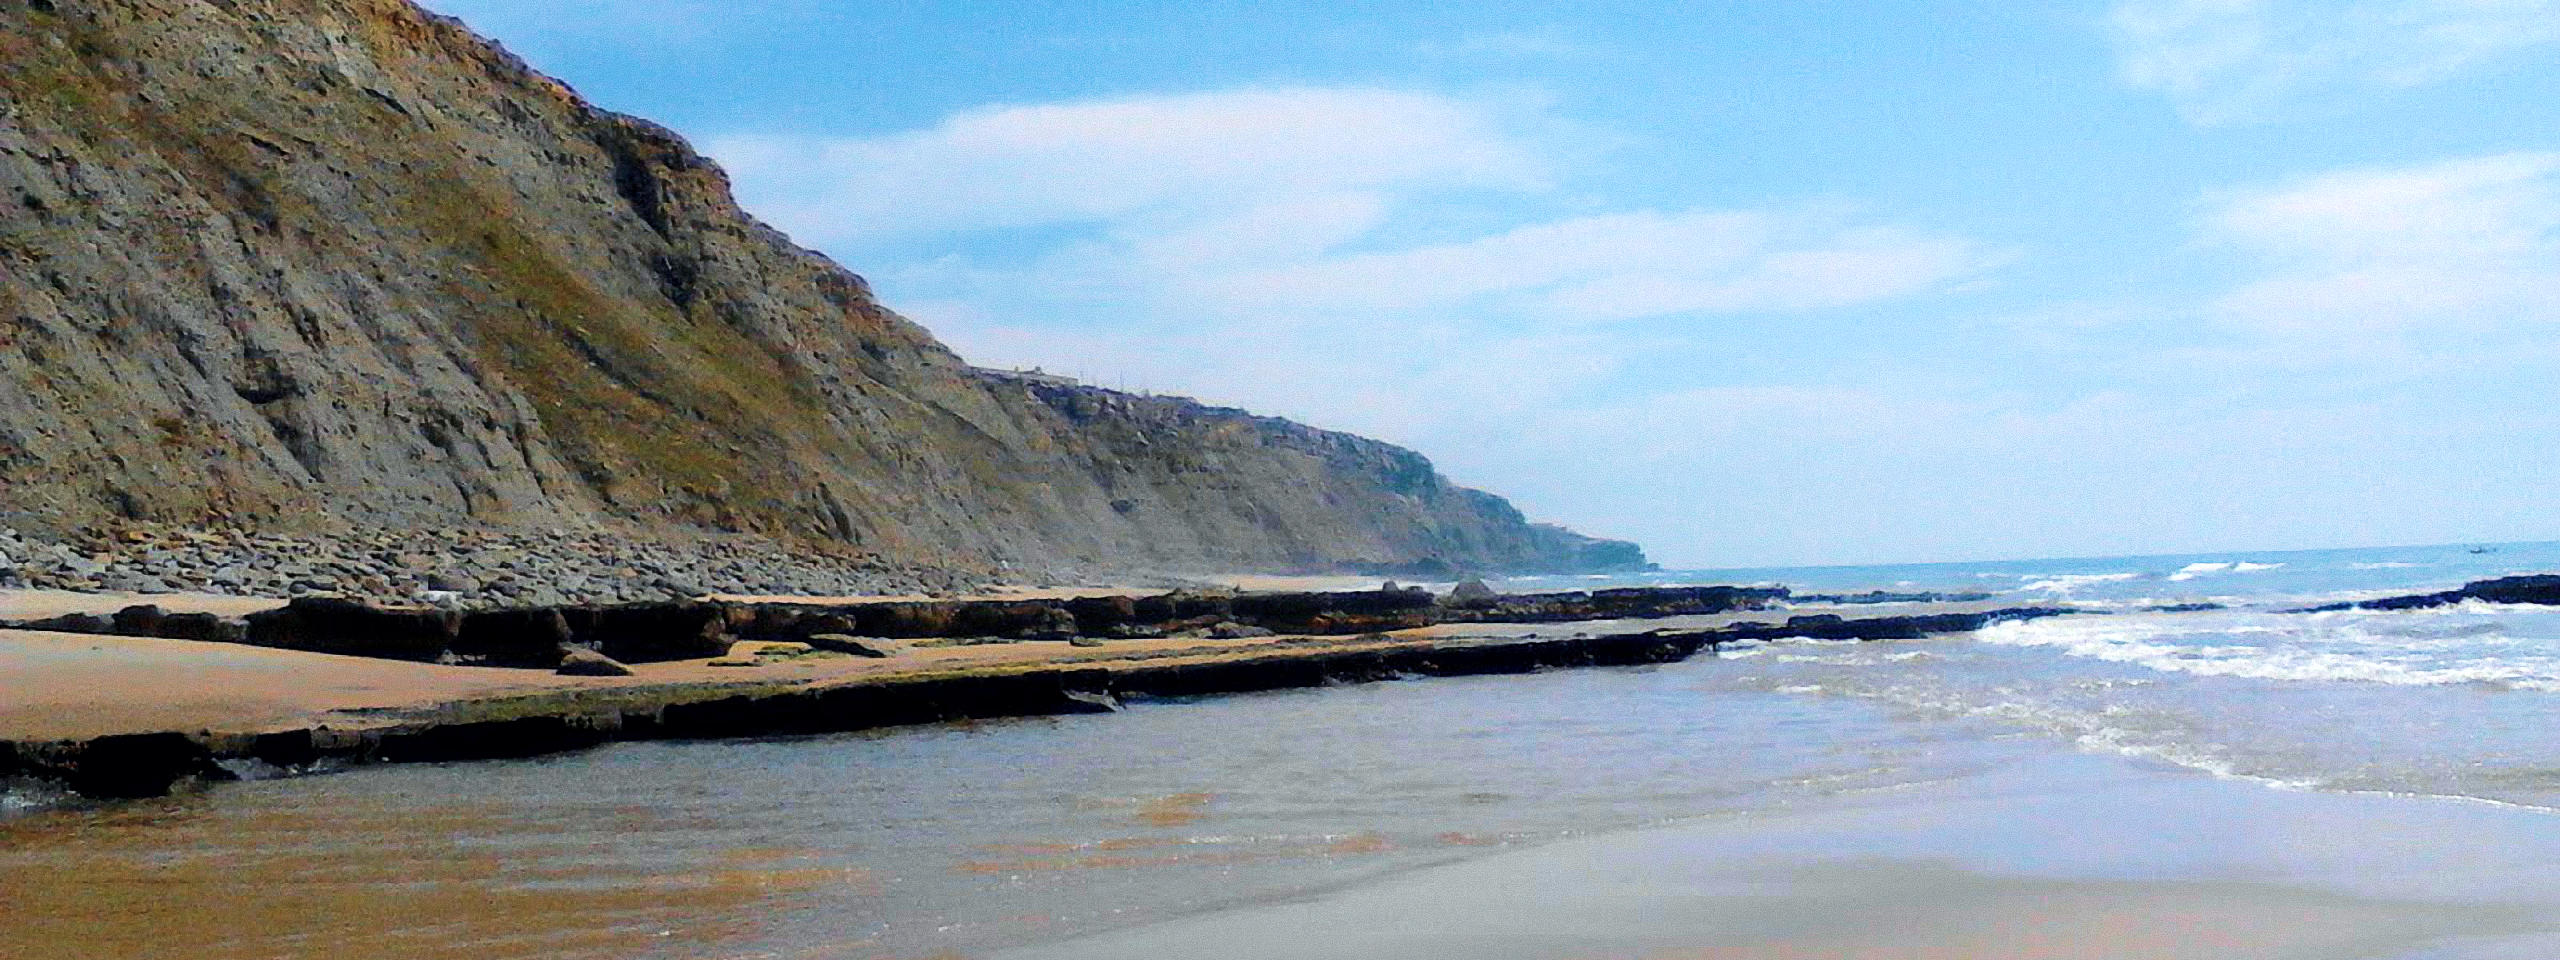 Aguda Beach